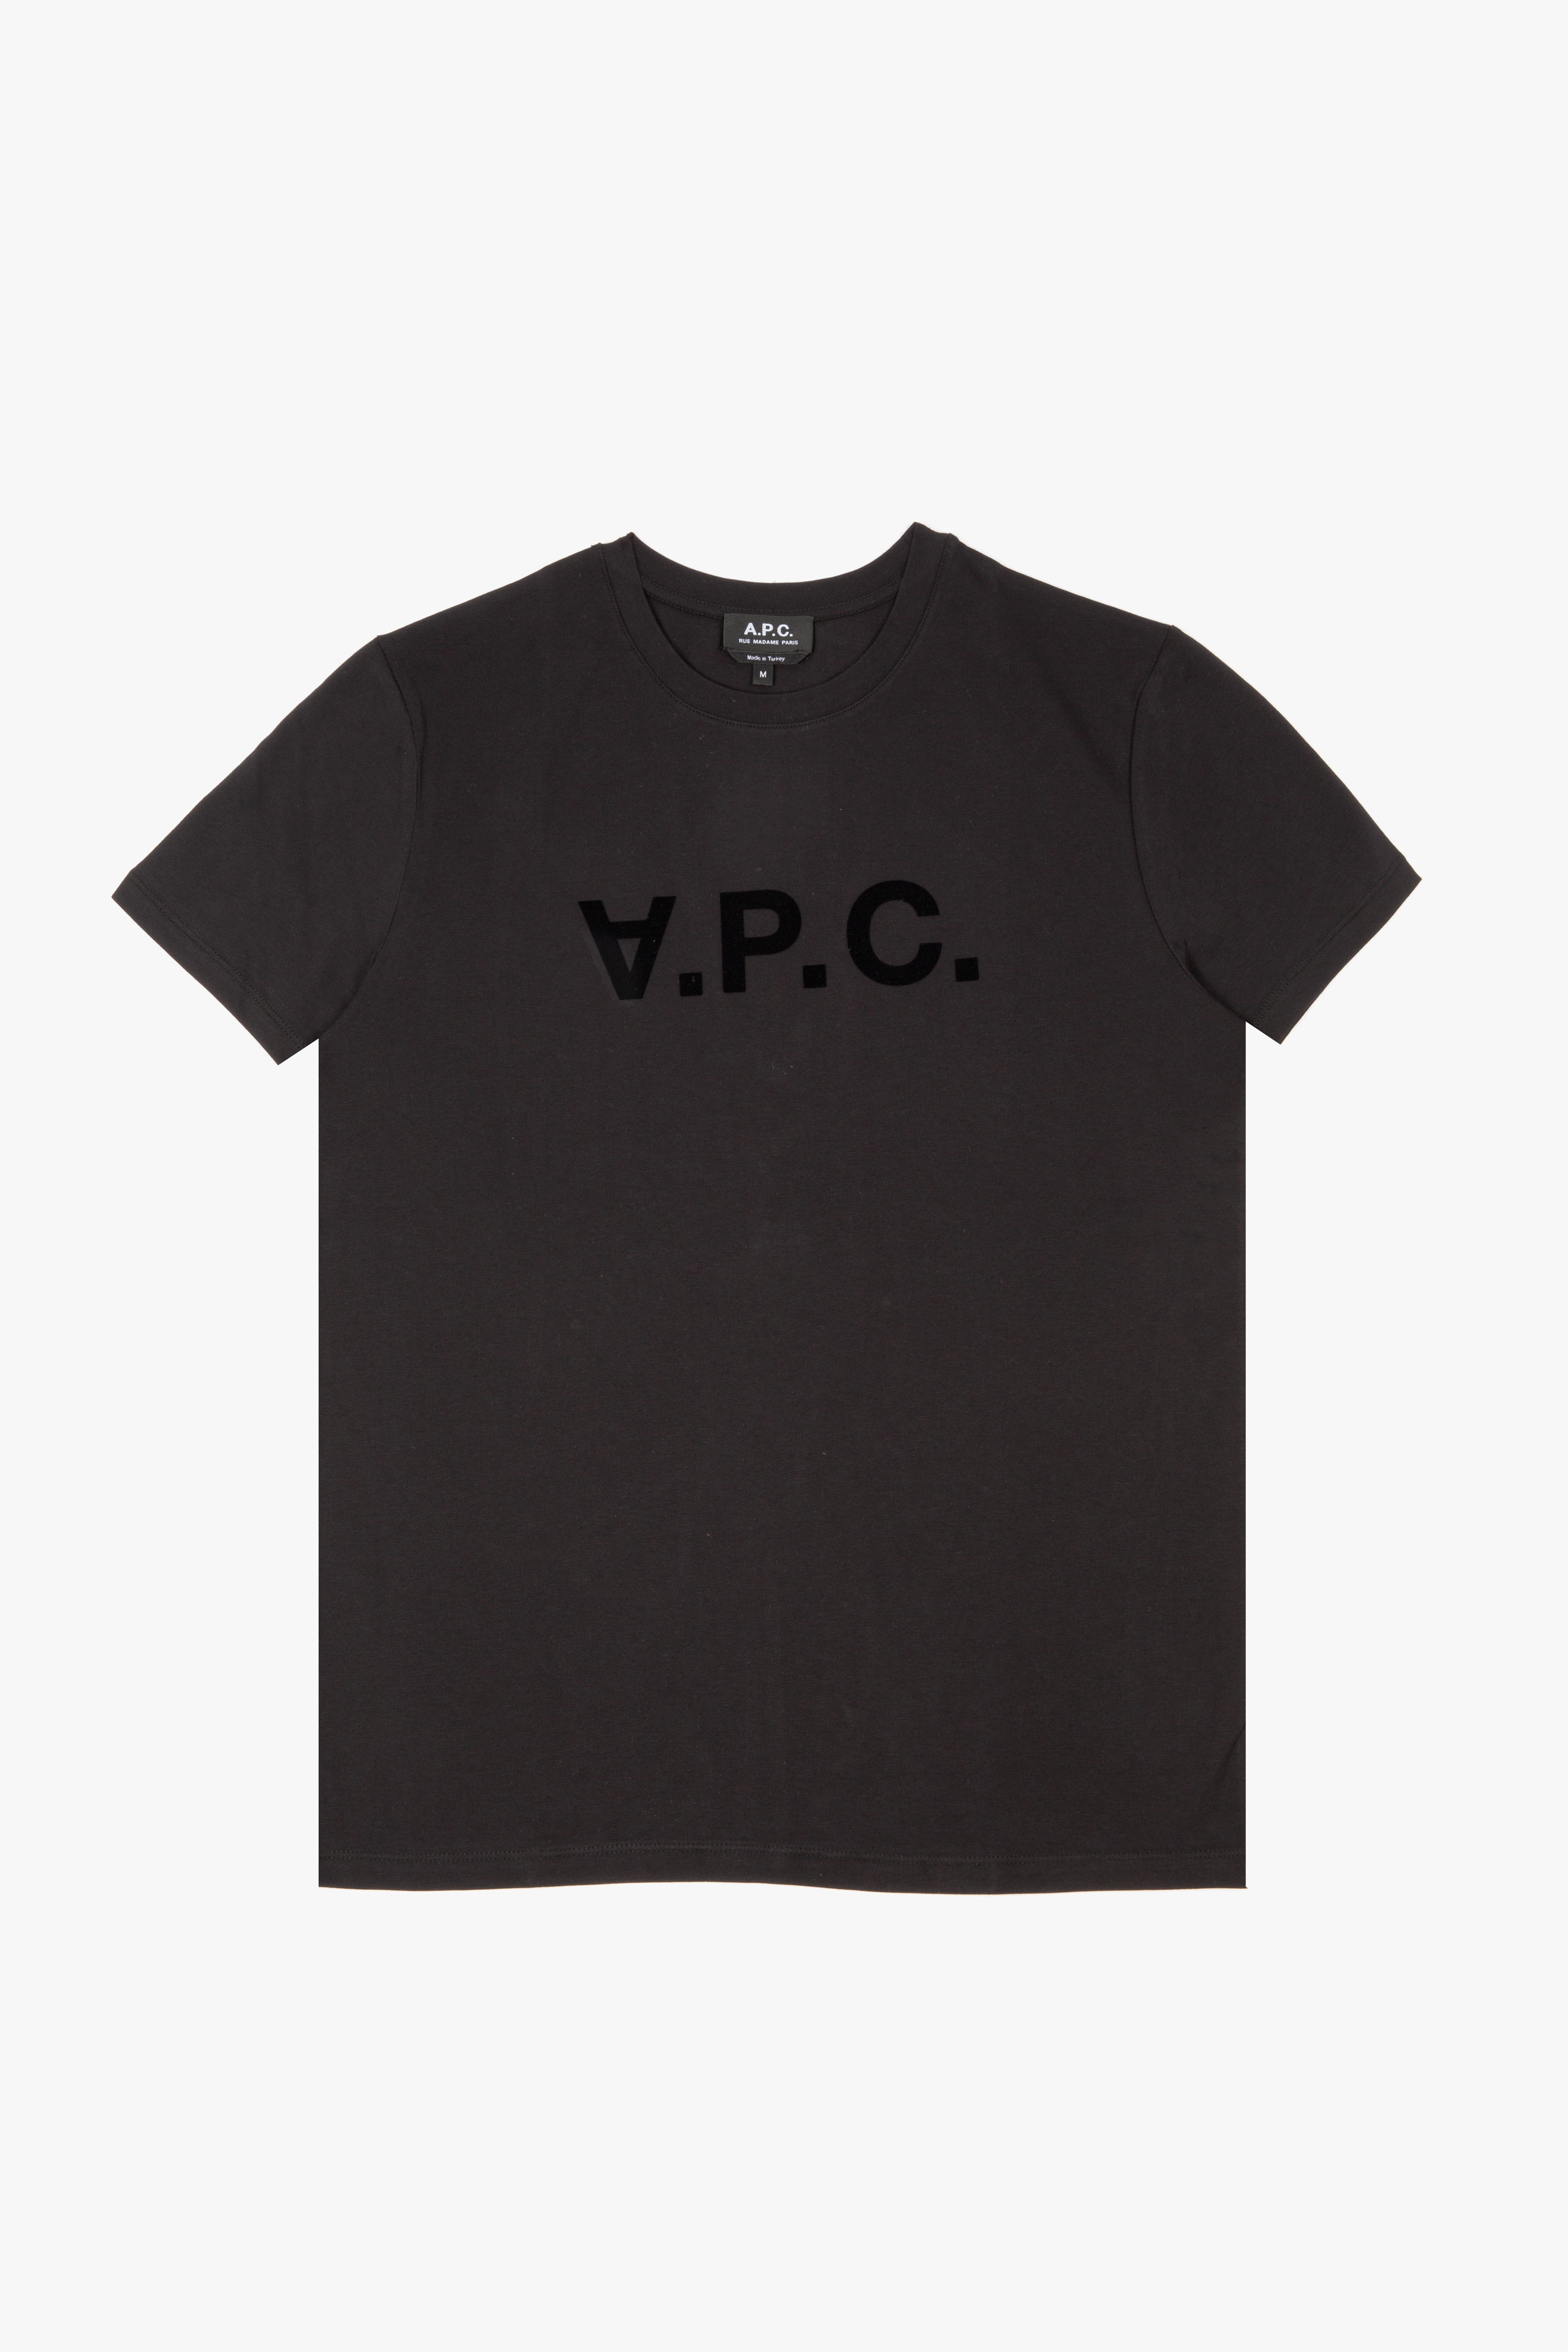 VPC T-Shirt Black